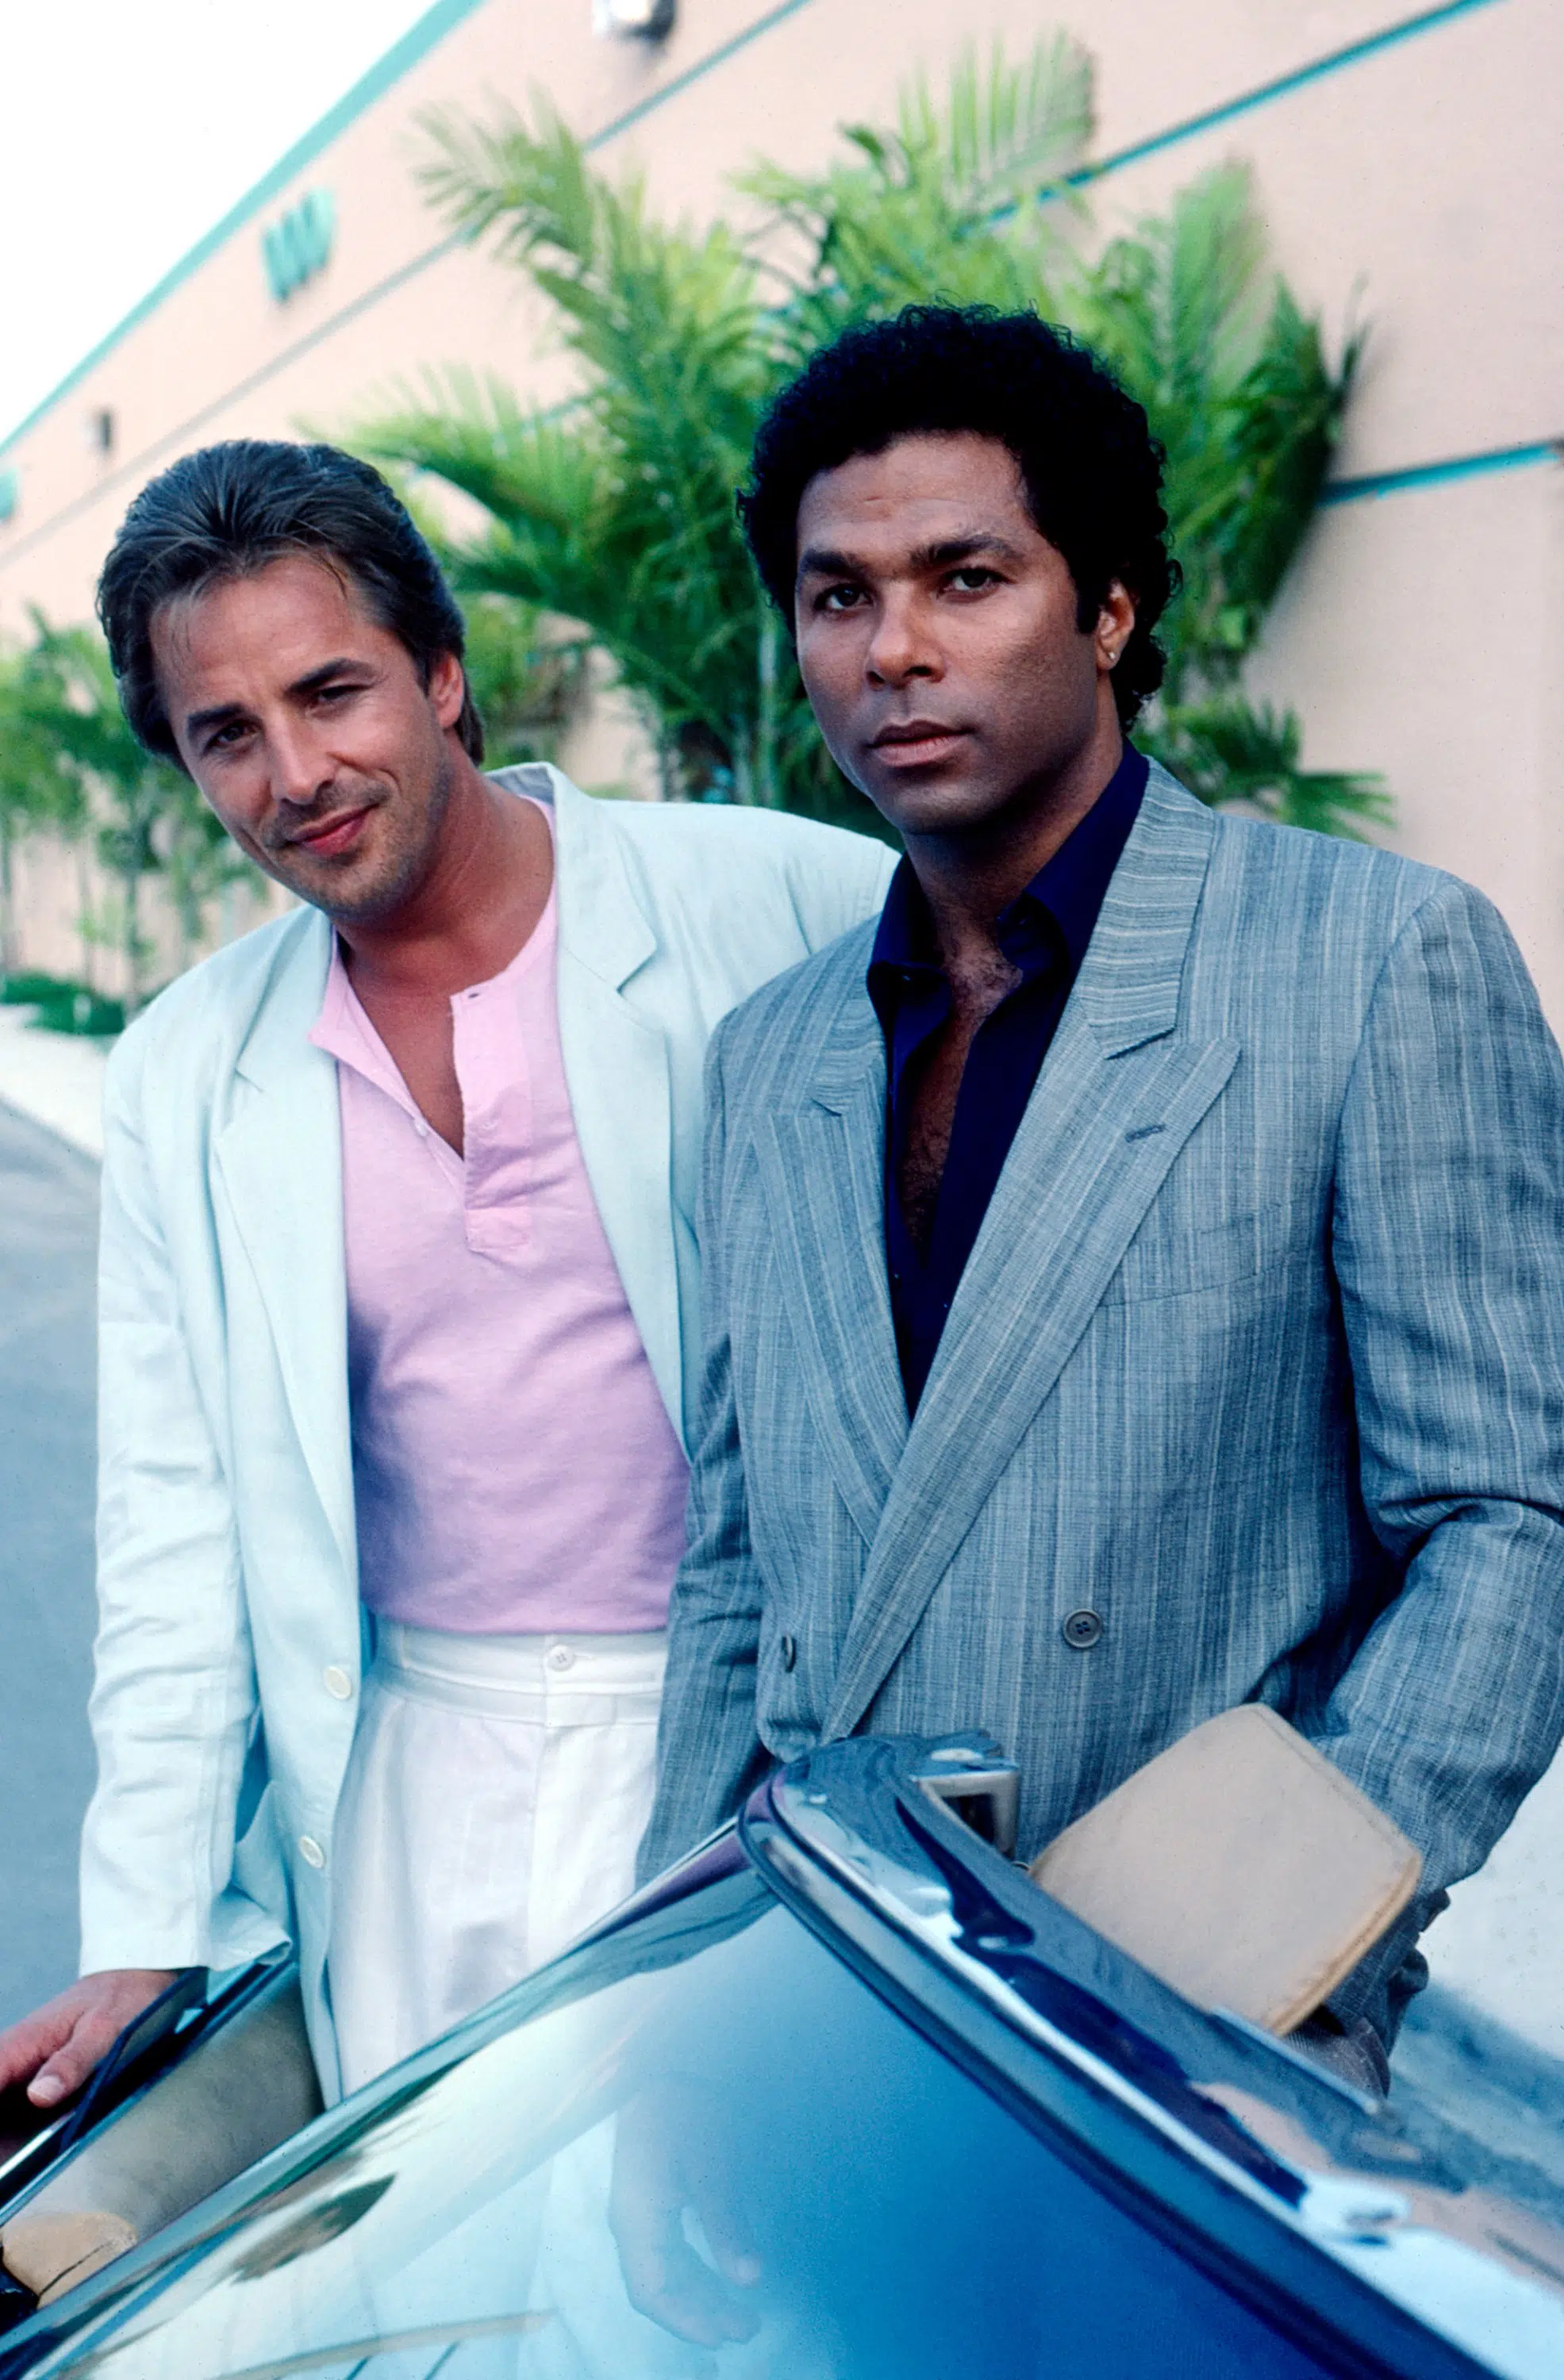 Miami Vice: Season 1 : Don Johnson, Philip Michael  